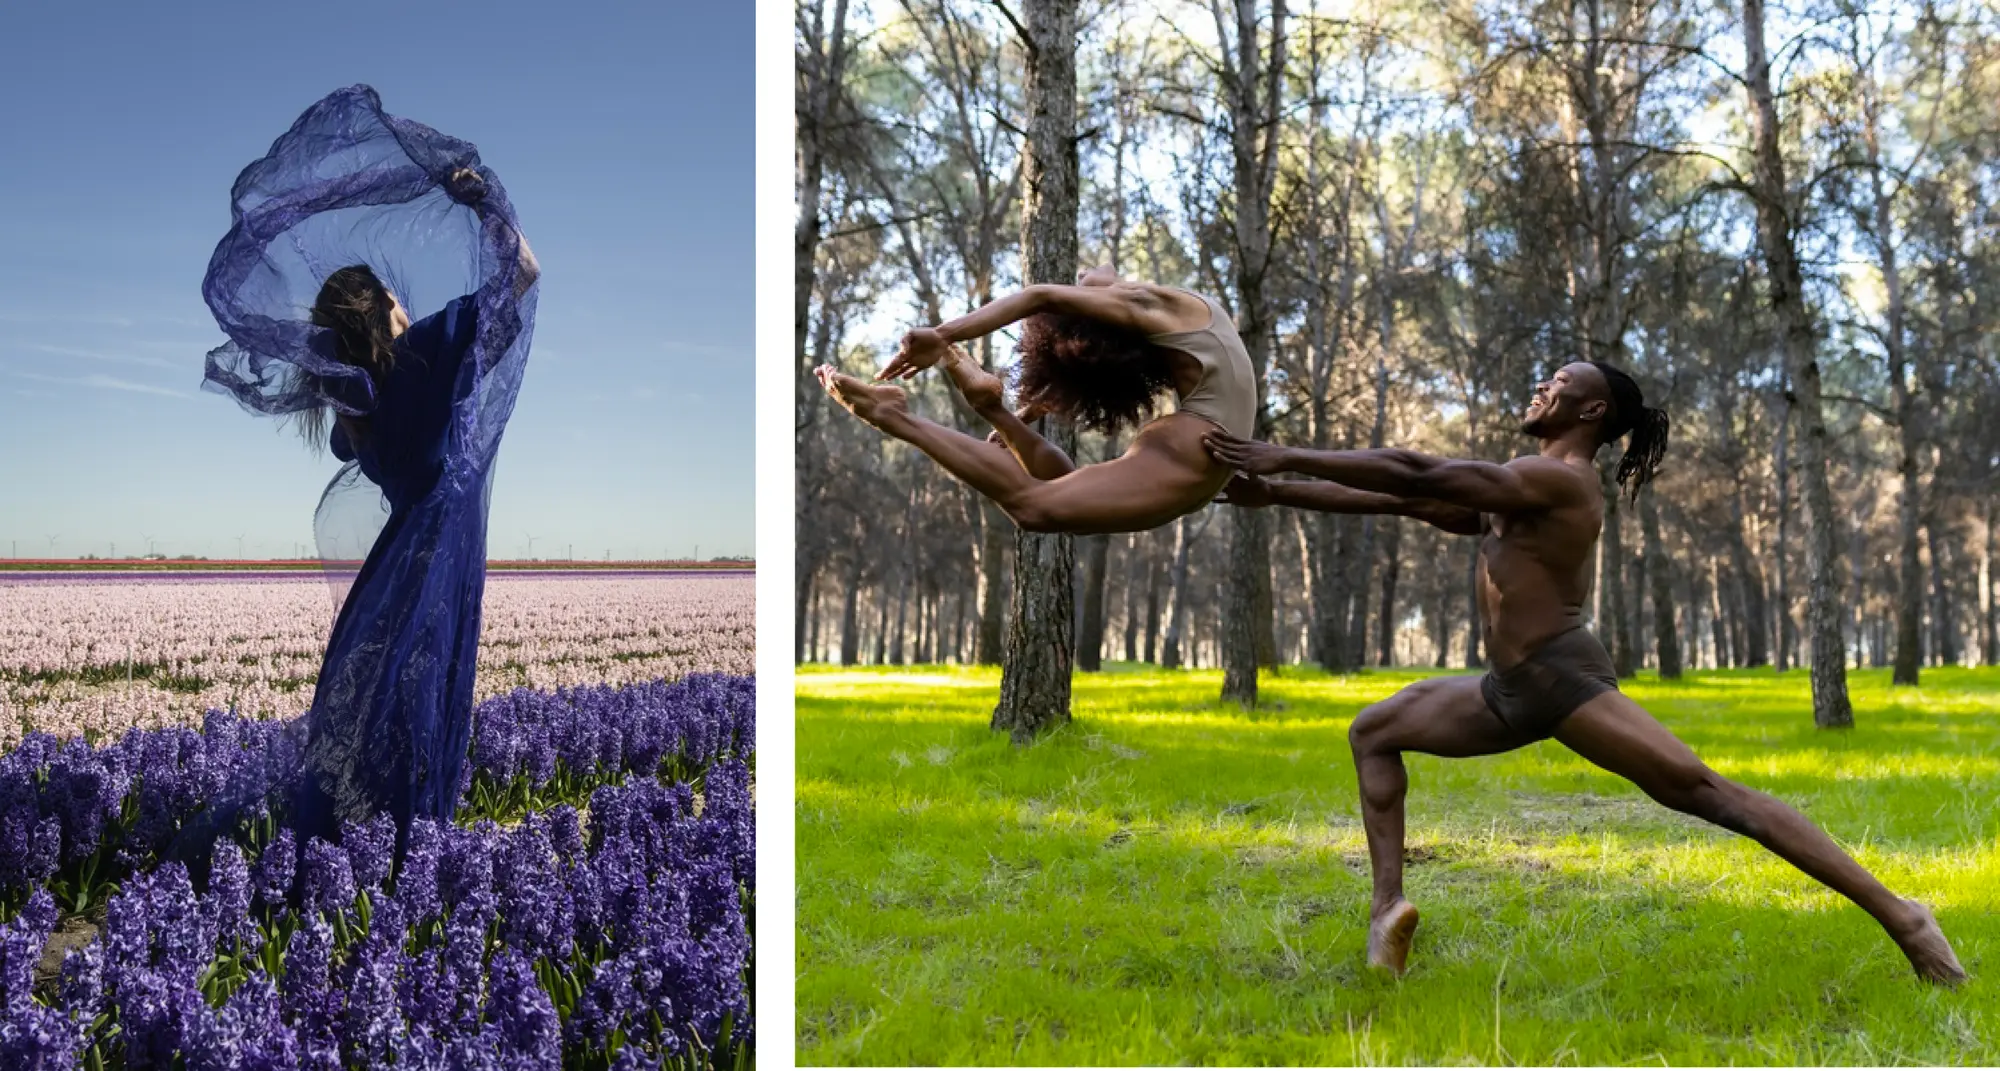 Mujer con vestido azul bailando en un campo de flores de jacinto purpura en Holanda dos bailarines profesionales actuando en ropa interior en medio del bosque